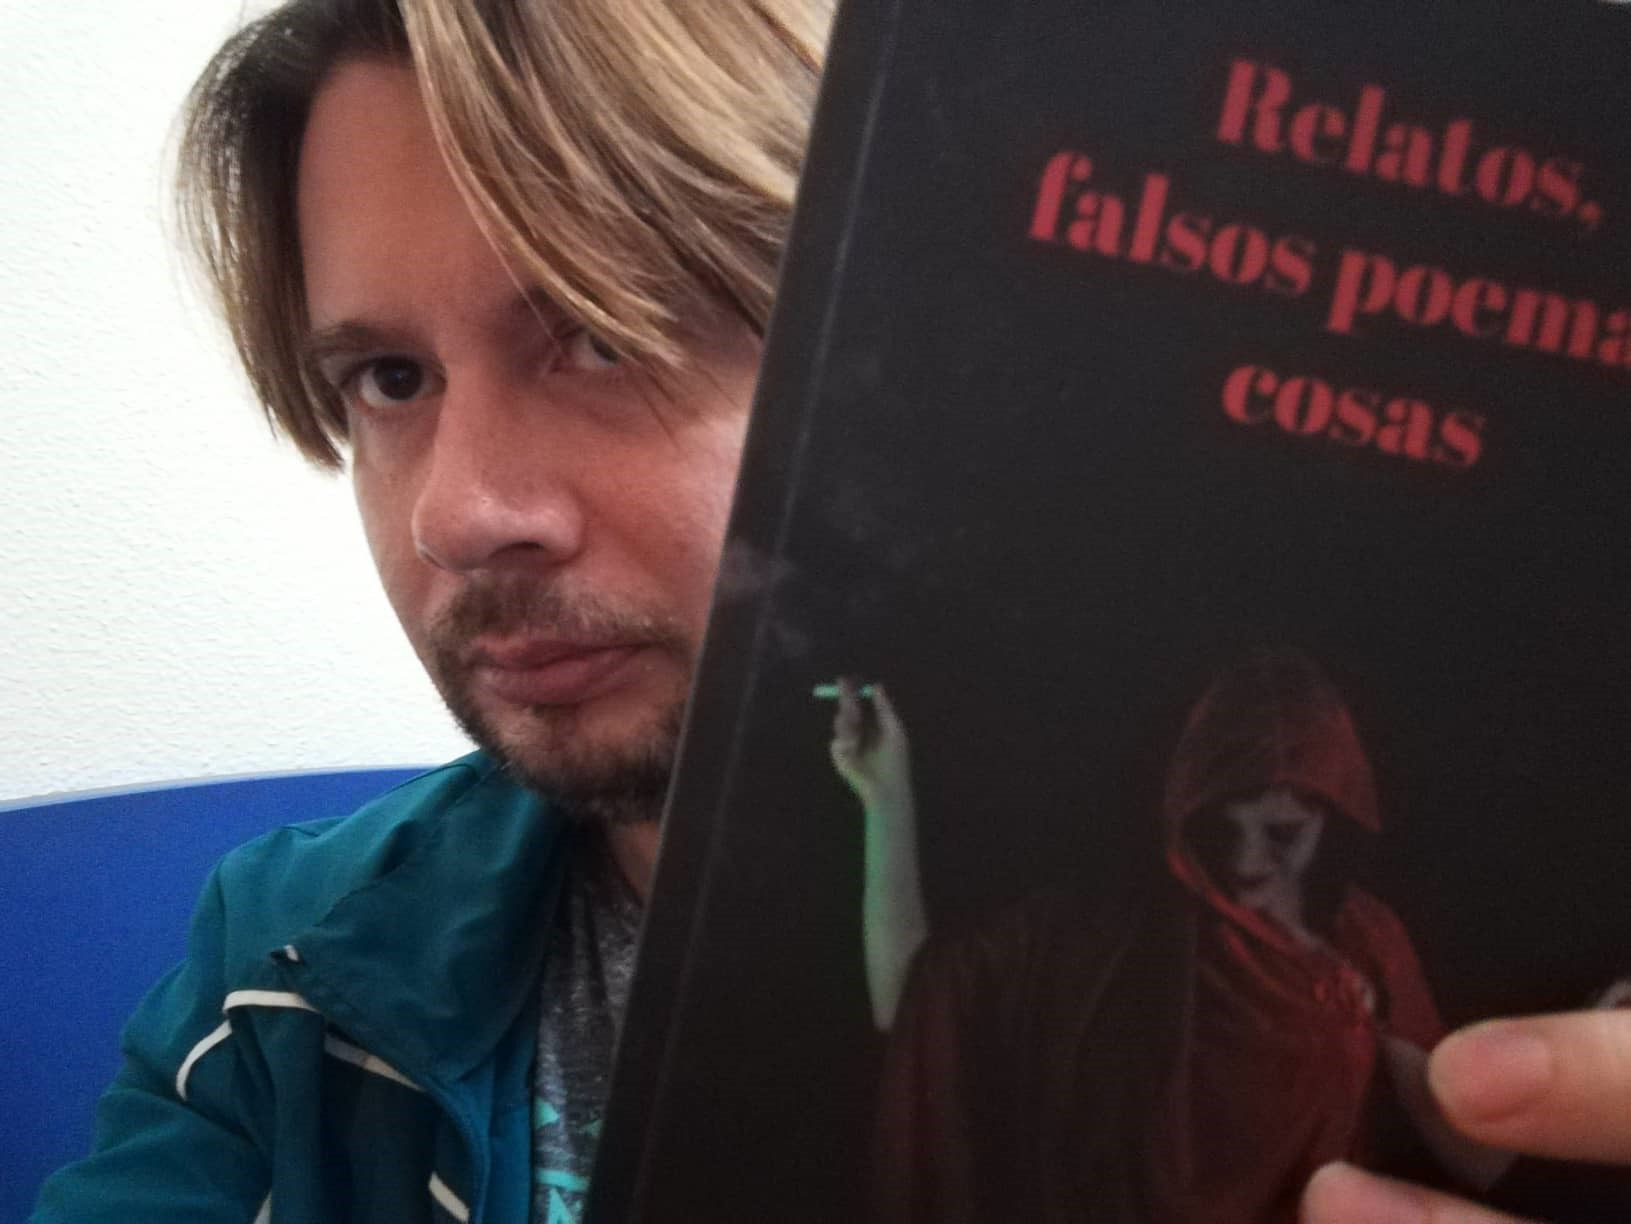 Conoce «Relatos, falsos poemas, cosas» del escritor Juan Francisco Marín